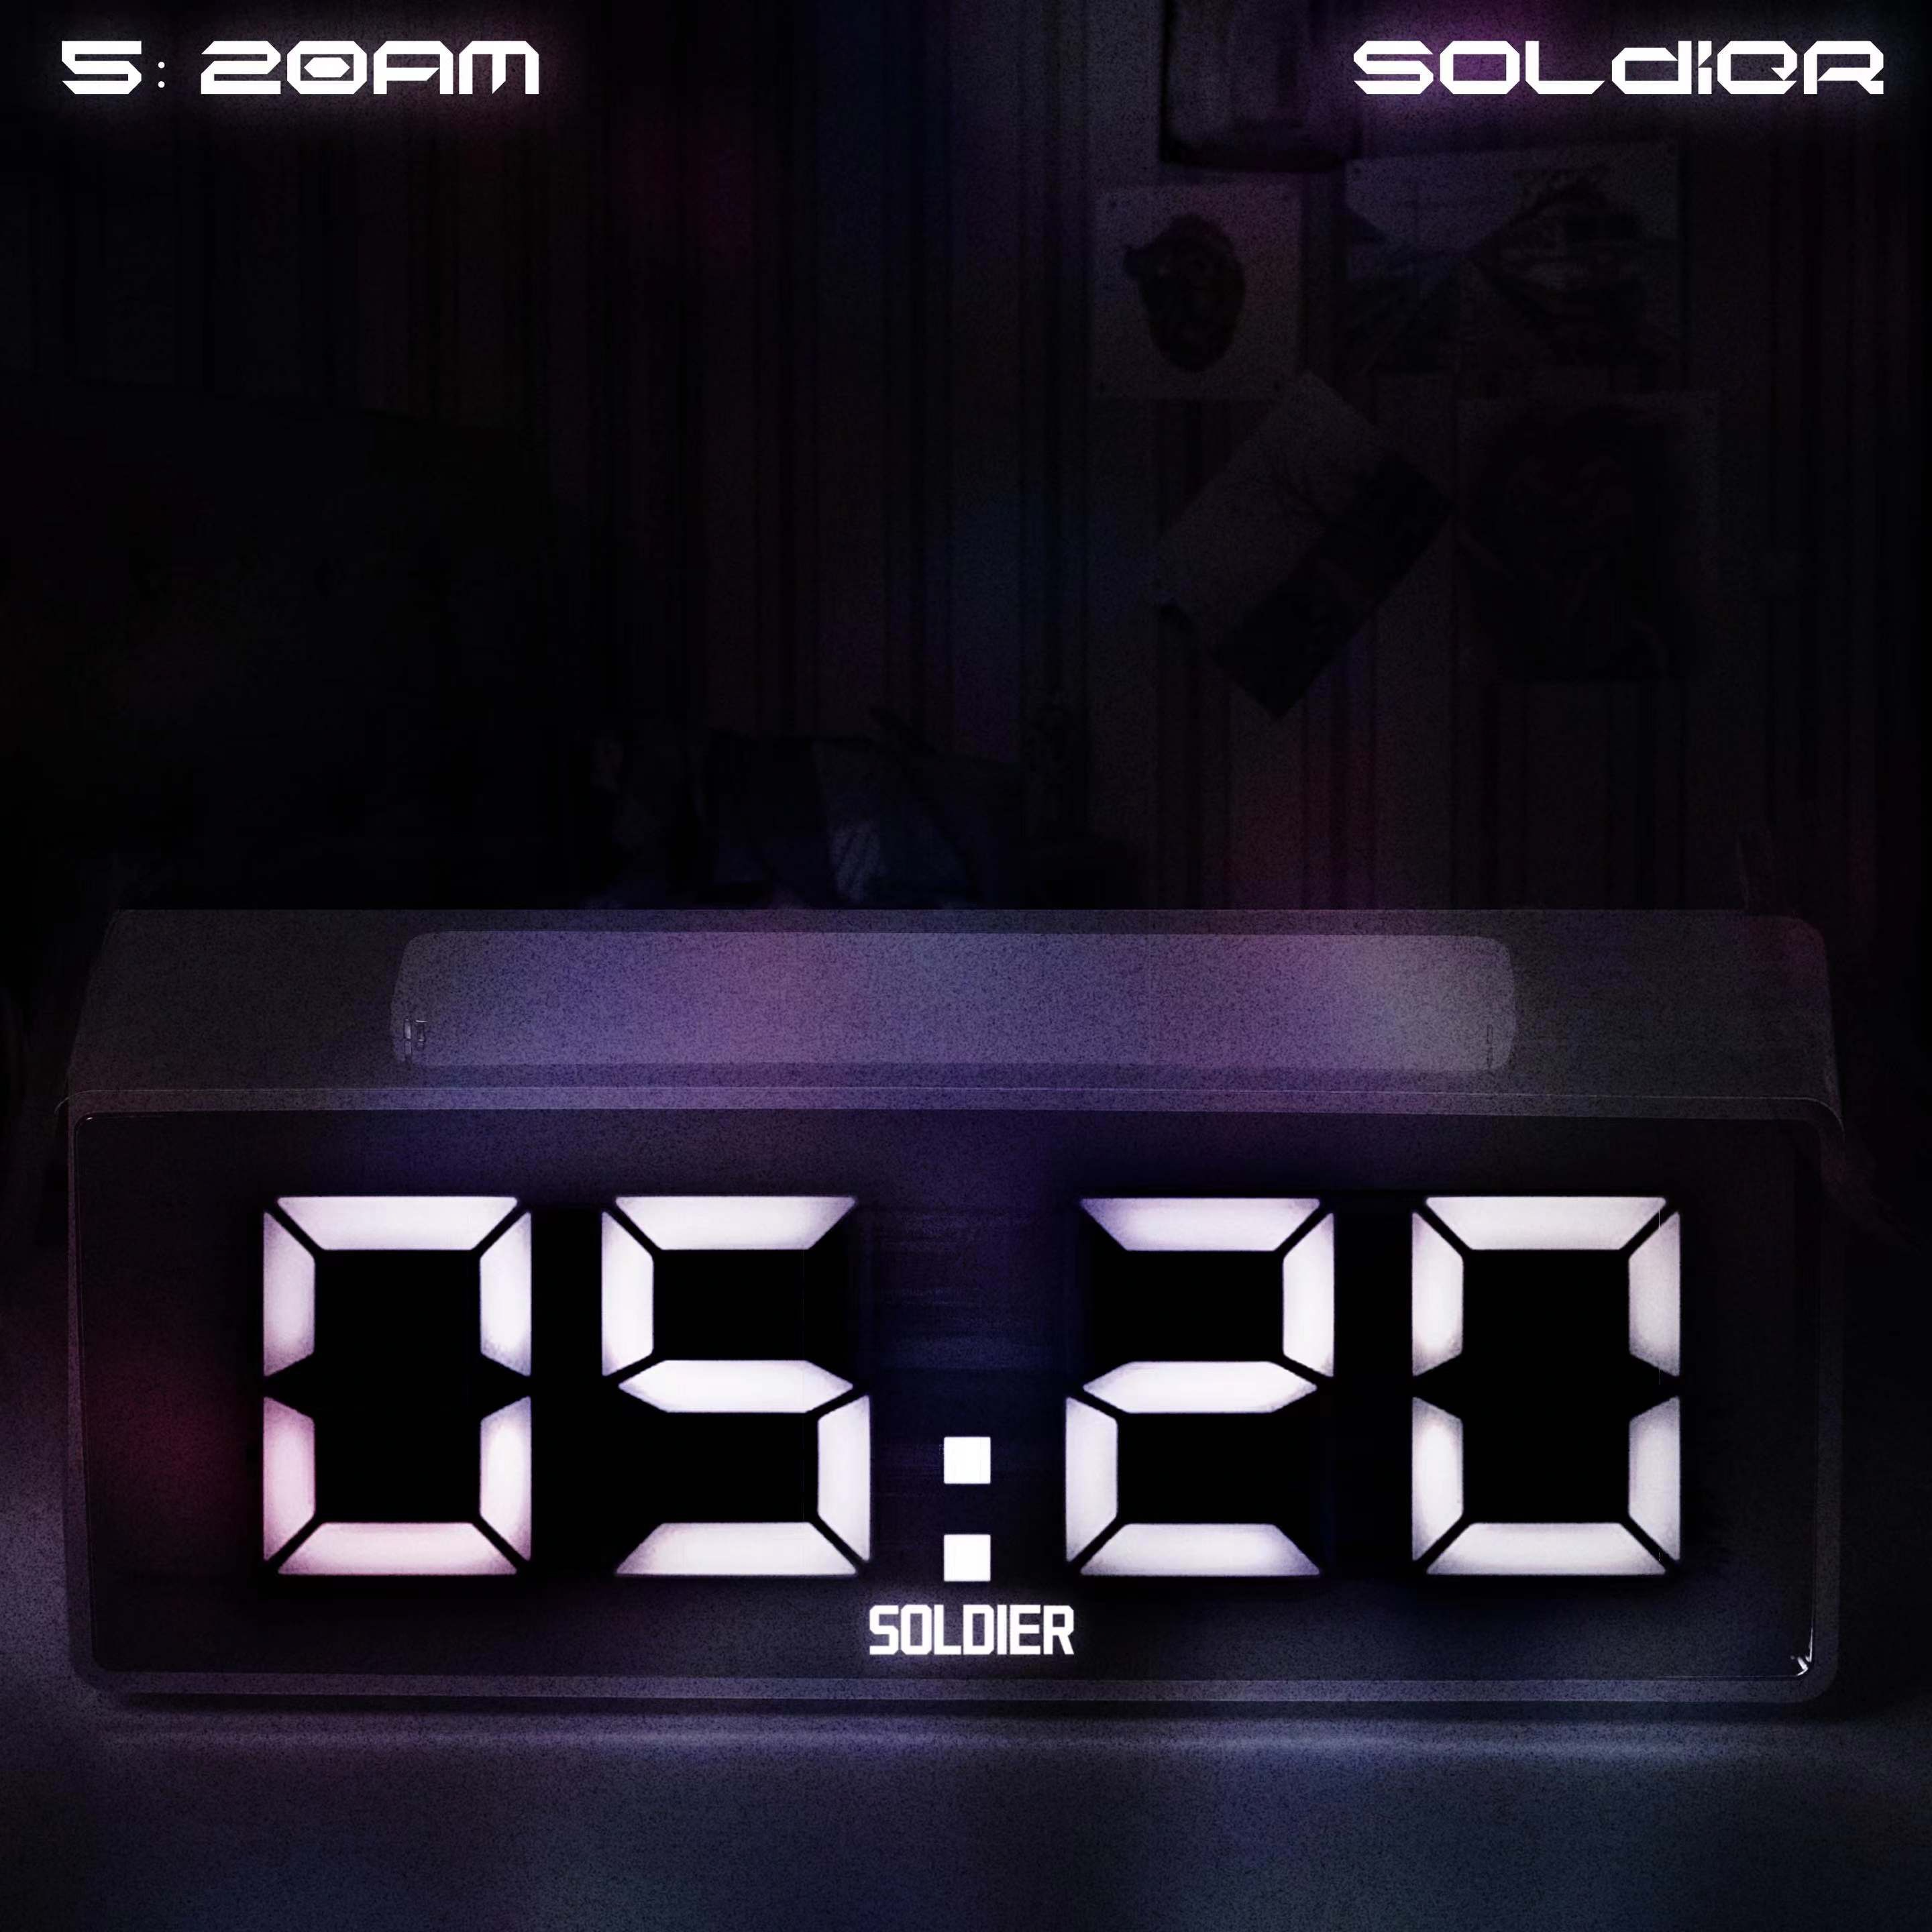 soldier - 5:20AM